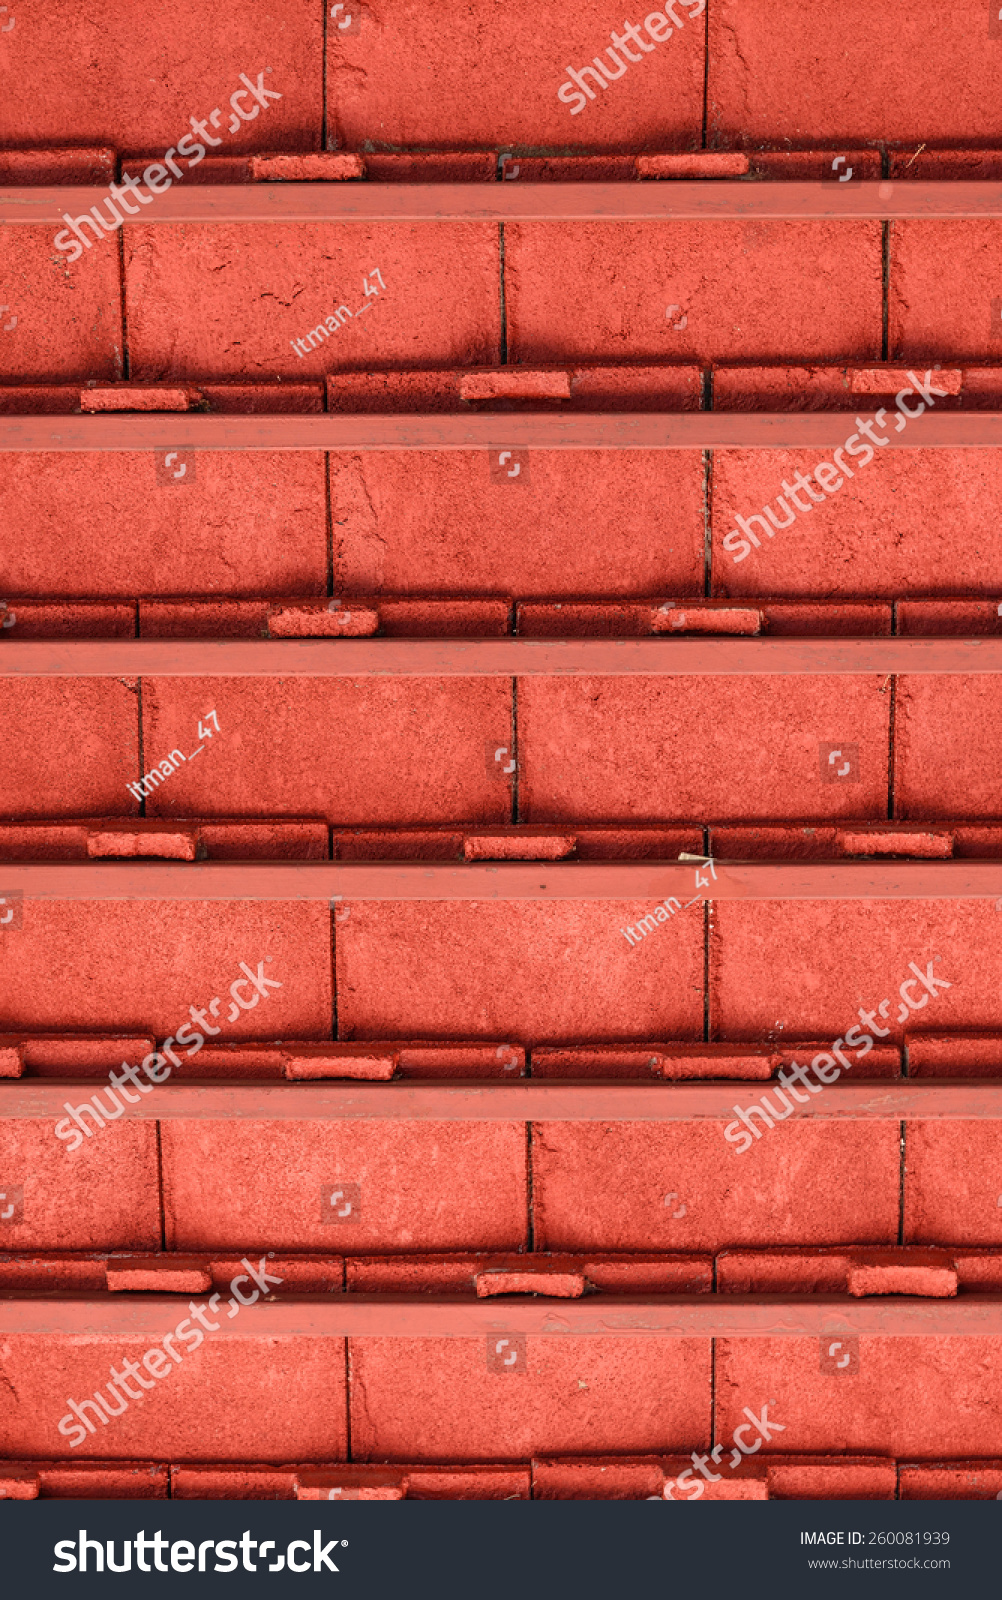 Inside Under The Orange Tile Roof. Stock Photo 260081939 : Shutterstock